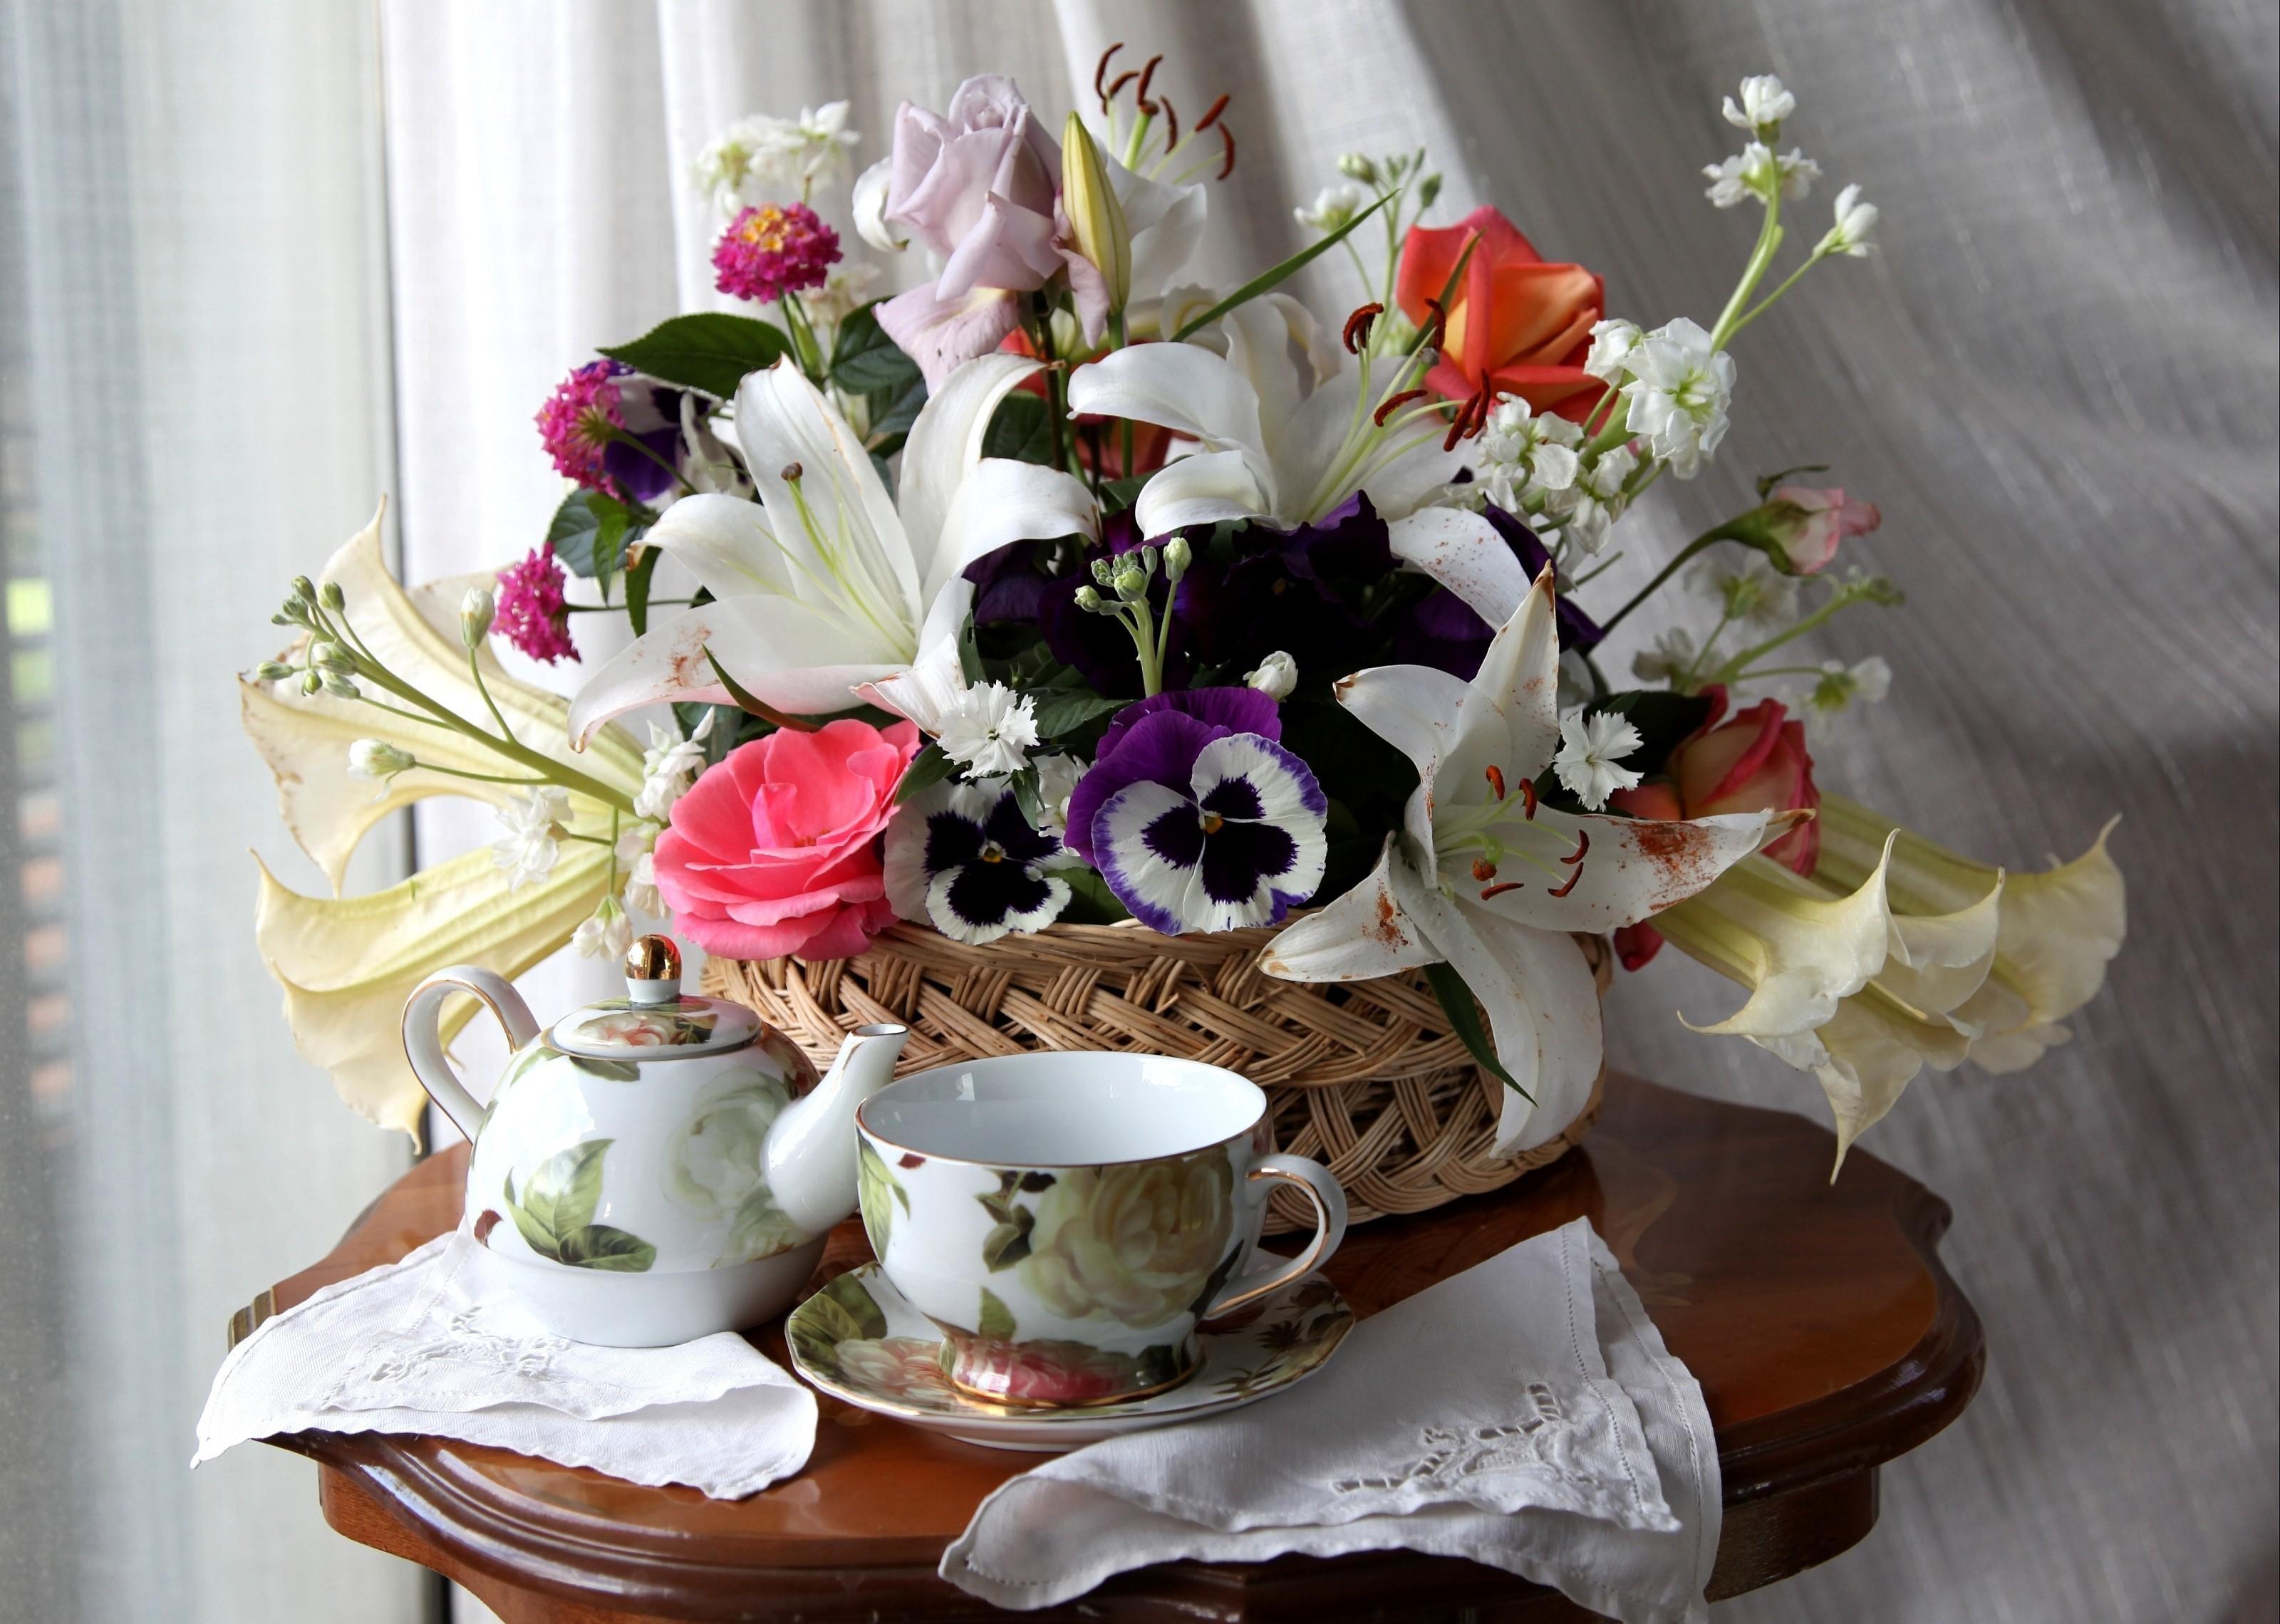 flowers, roses, pansies, lilies, table, basket, tea